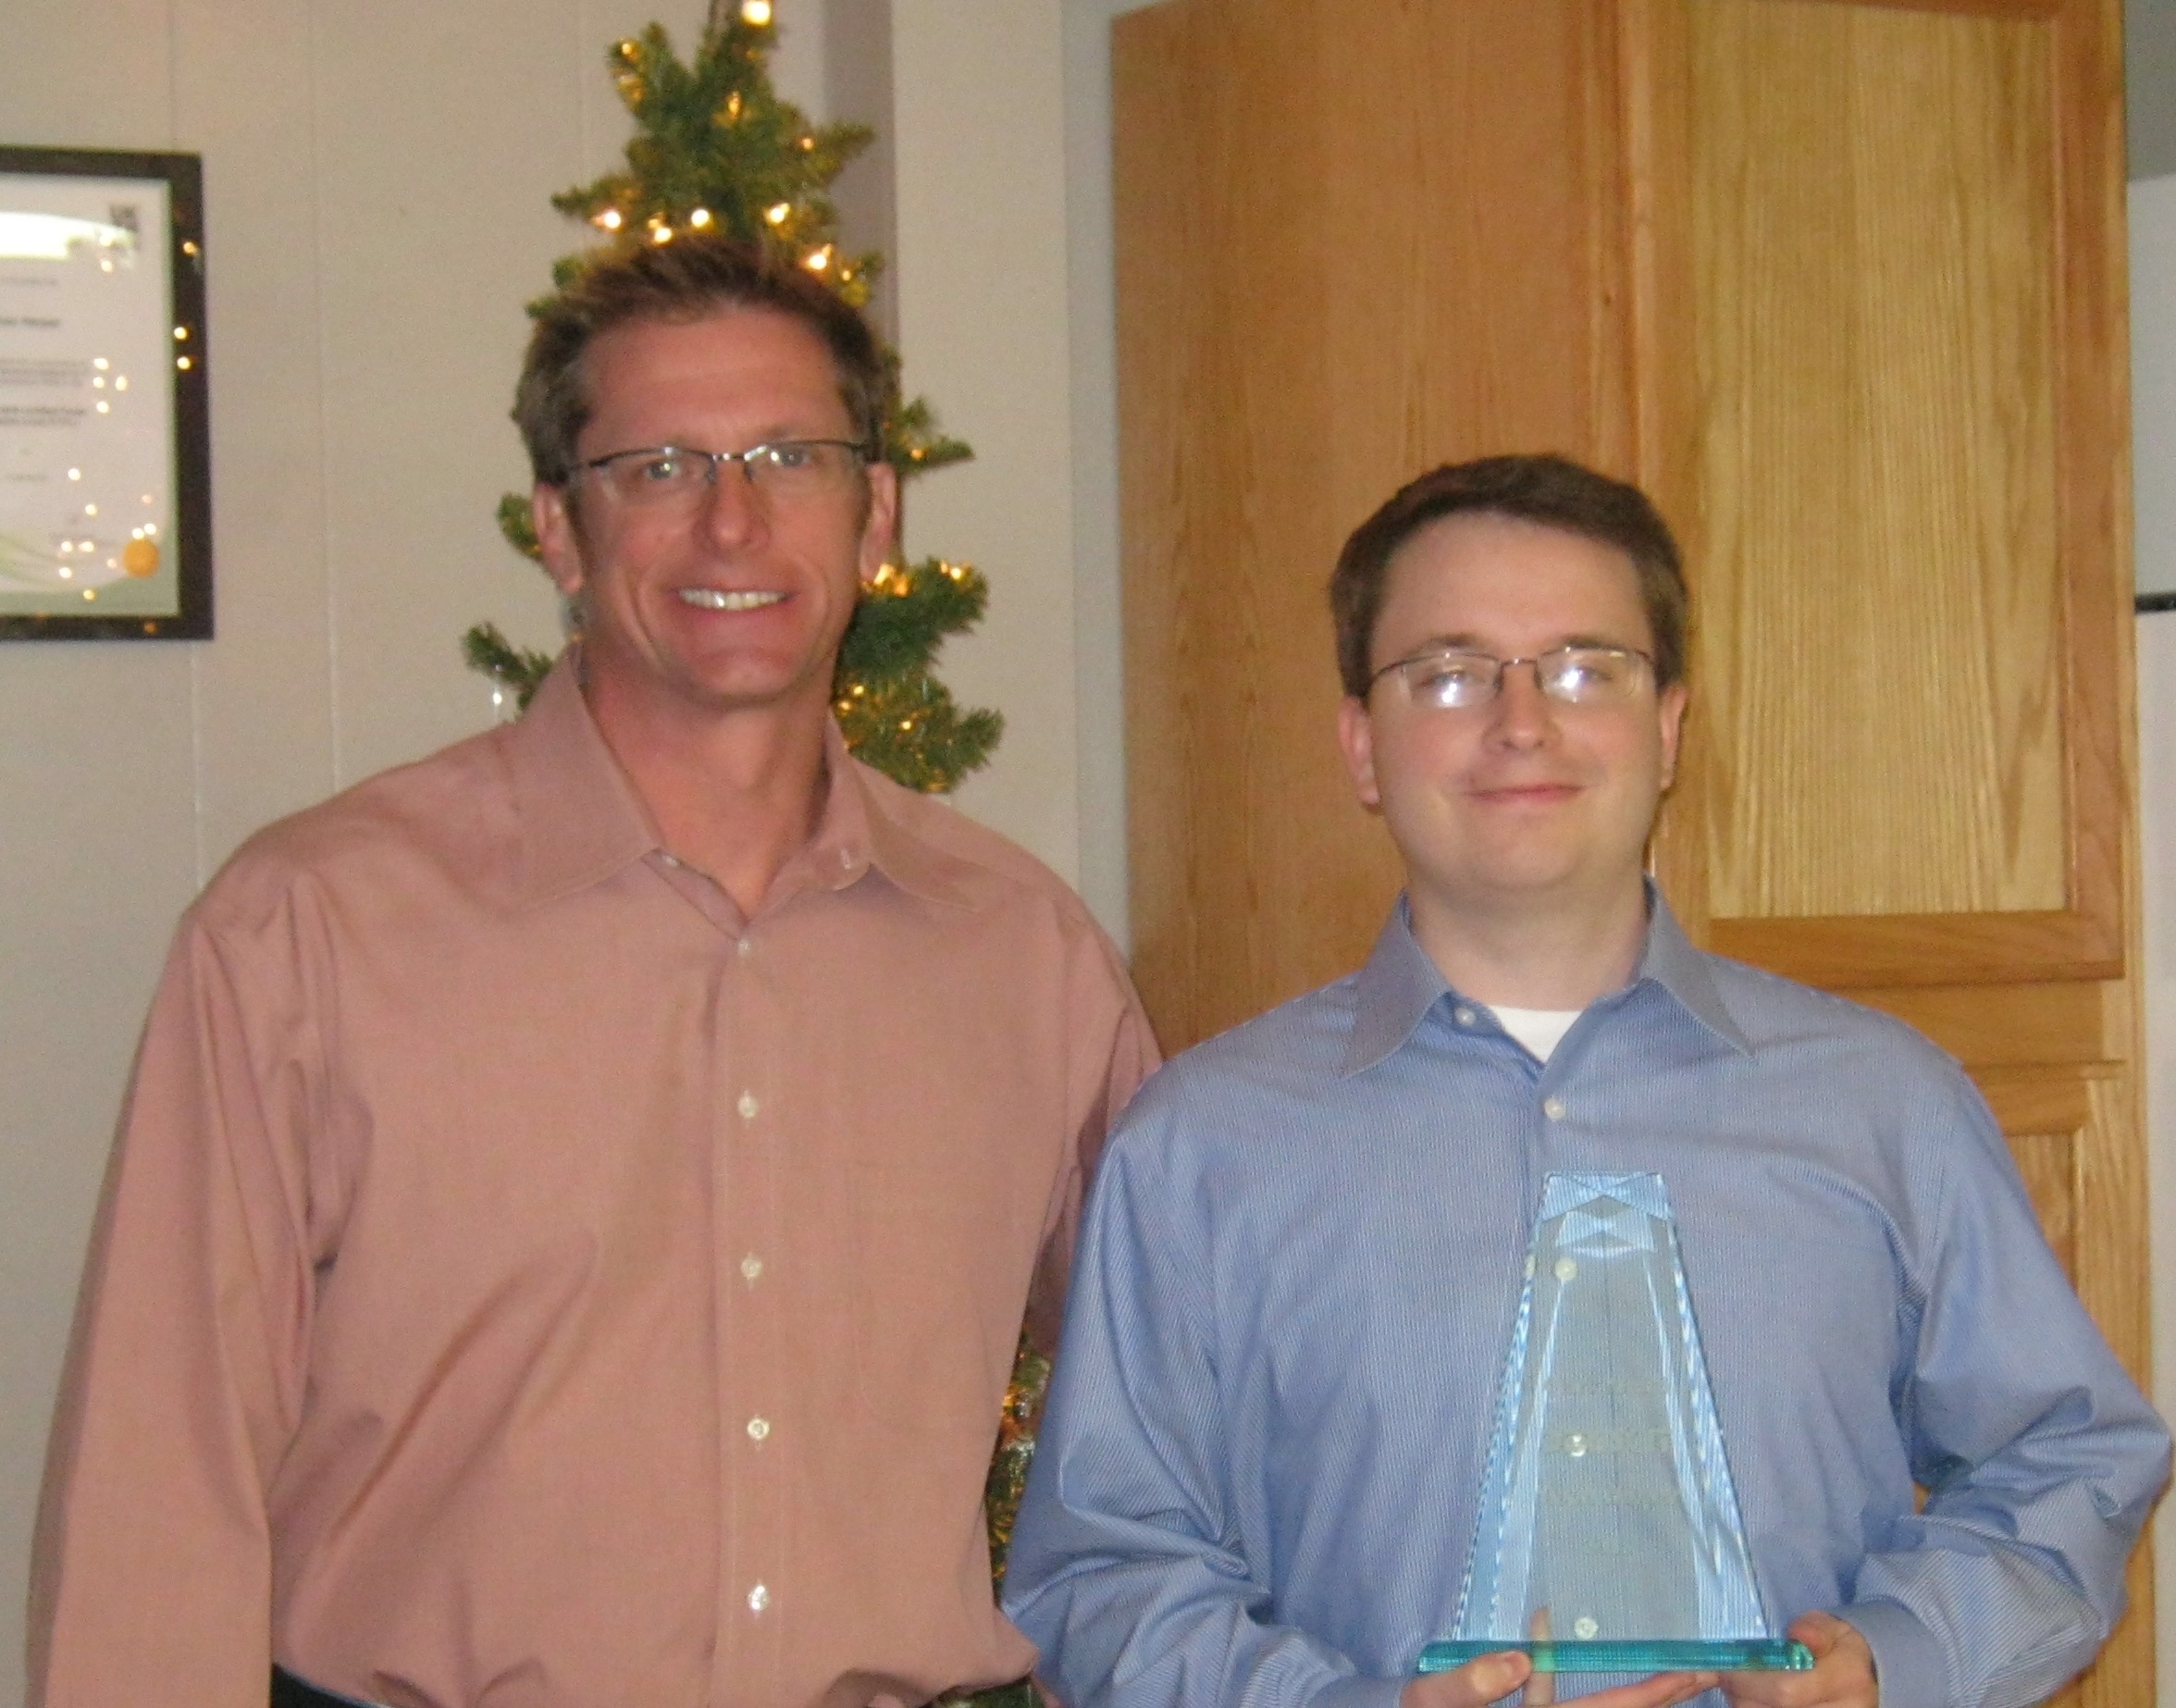 2013 Clark Award winner Sloan Harper with Lann Stewart, DeRisk IT President